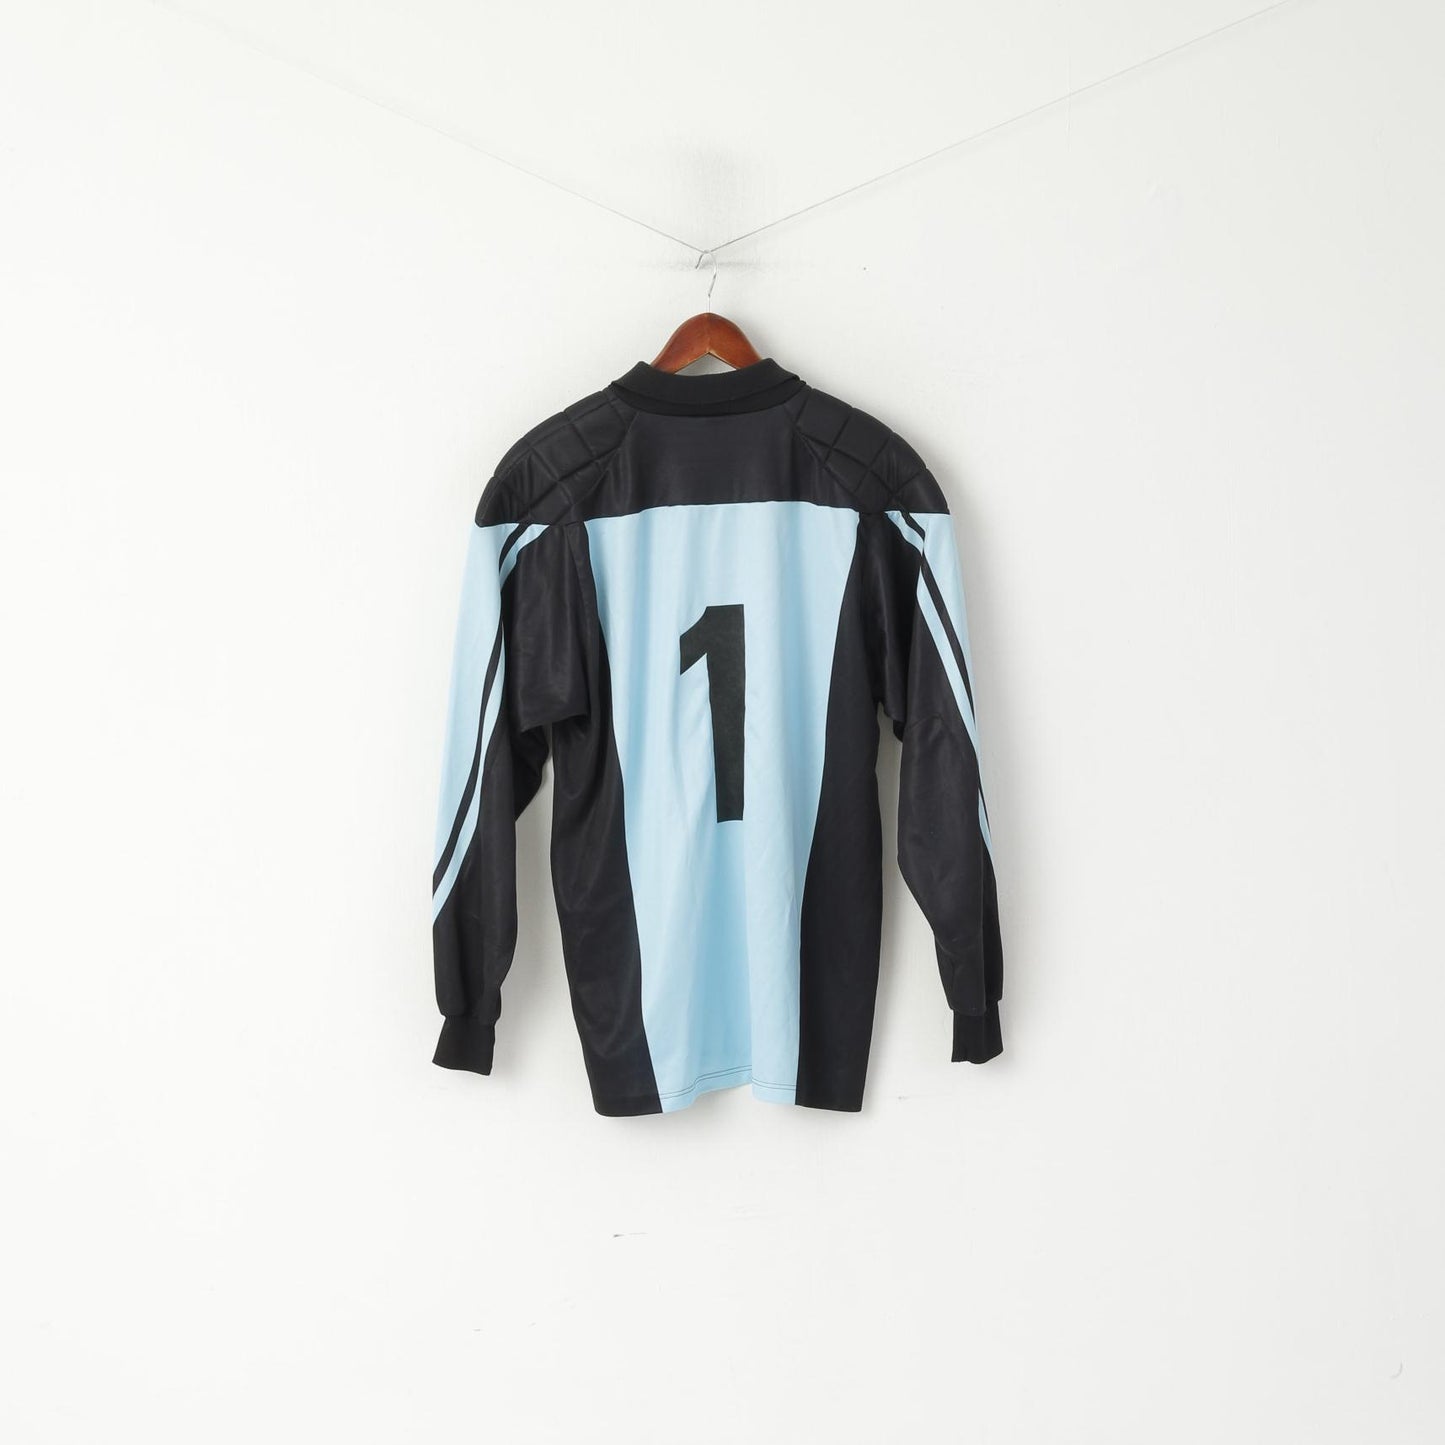 Erima Men L/XL Polo Shirt Blue Vintage Goalkeeper Football Sport FKP #1 Top